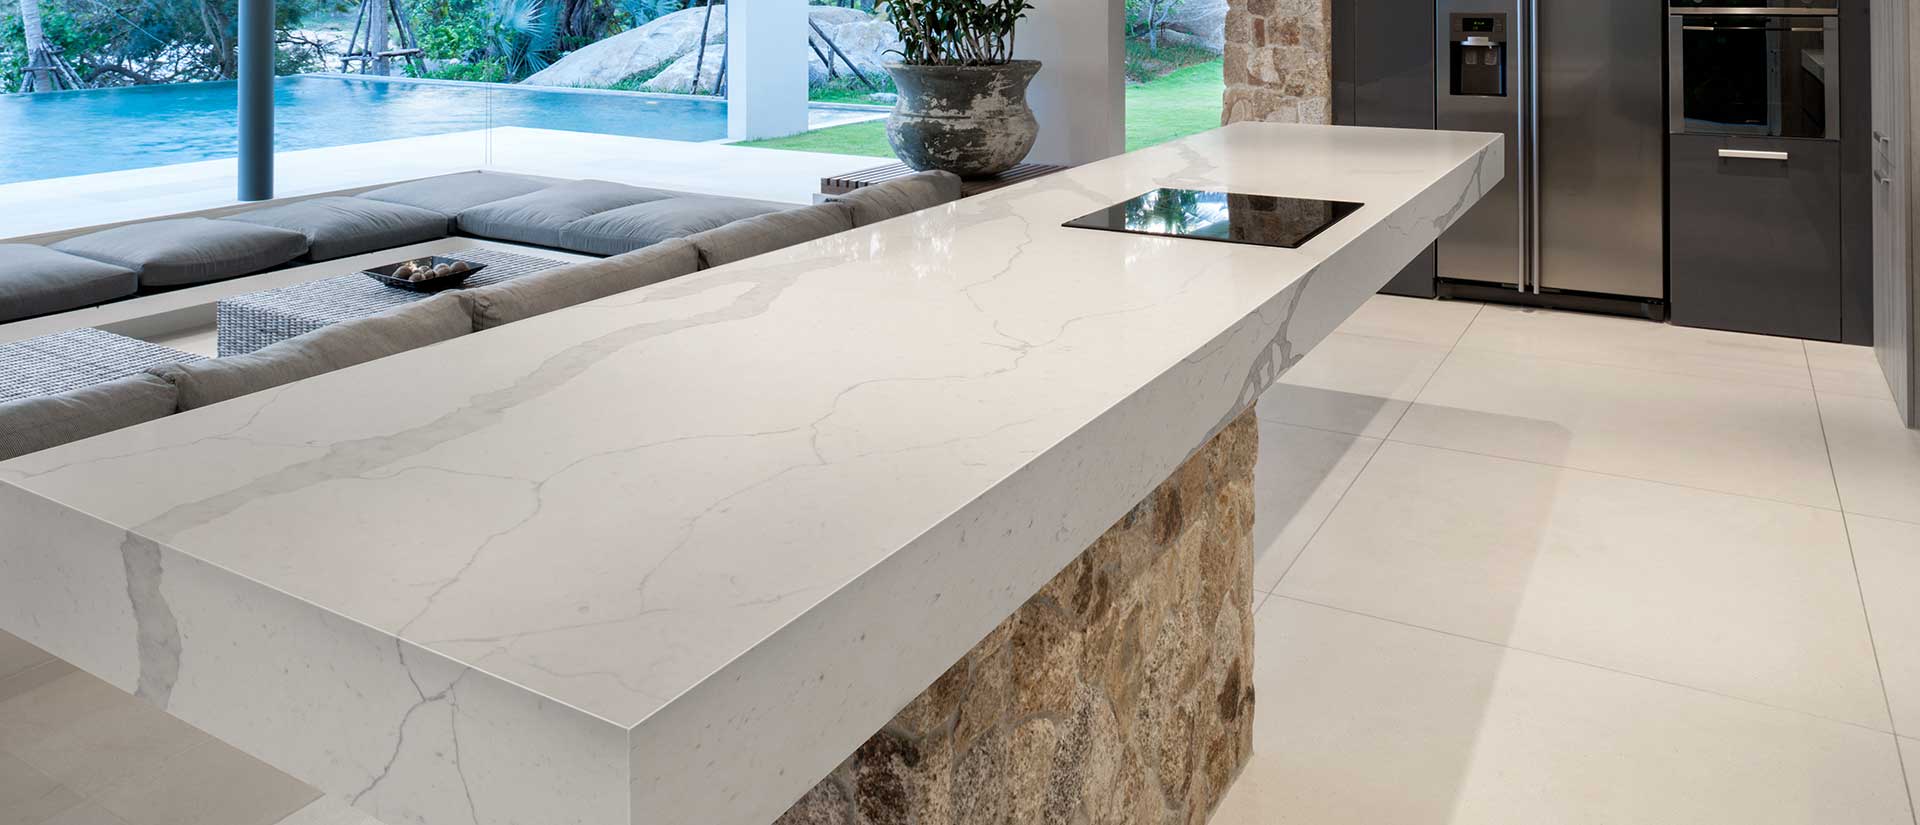 Calacatta Trento quartz countertop in a bright modern kitchen